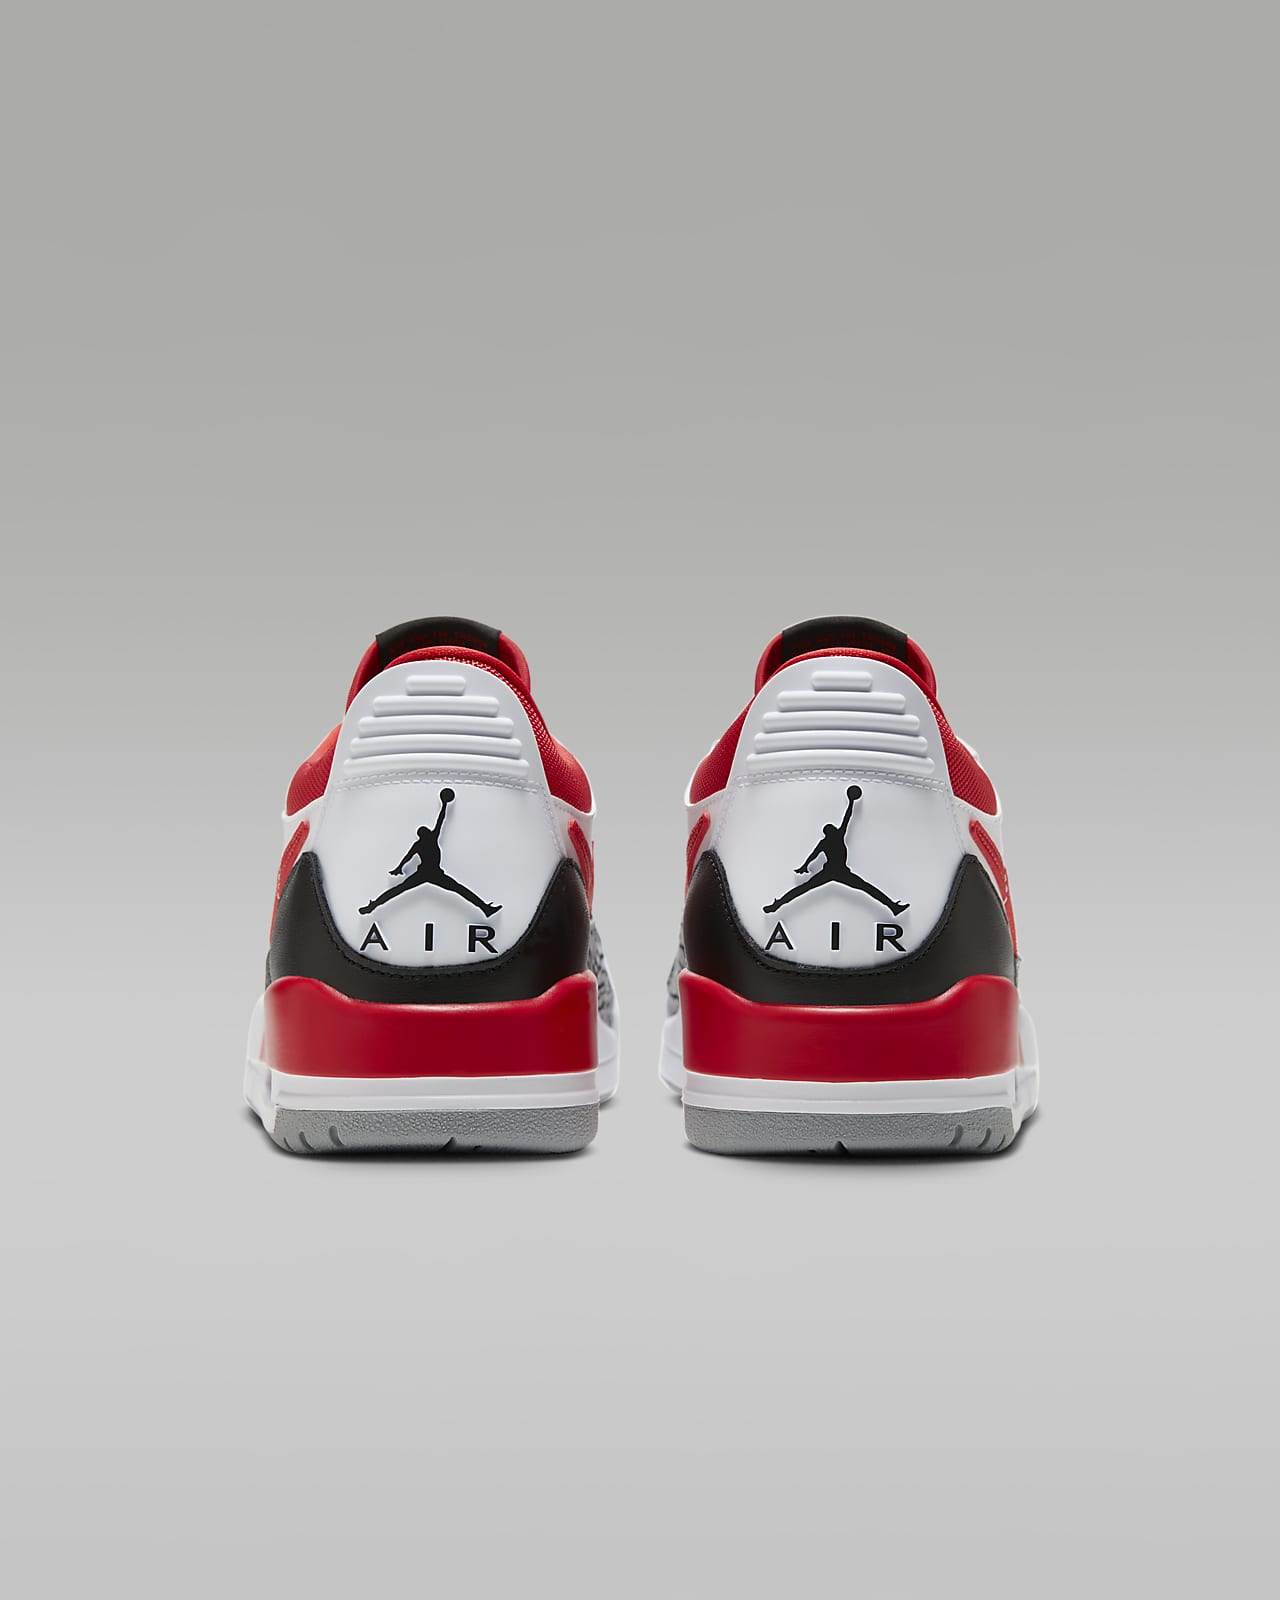 Nike Air Jordan 4 Retro X Louis Vuitton in Central Division